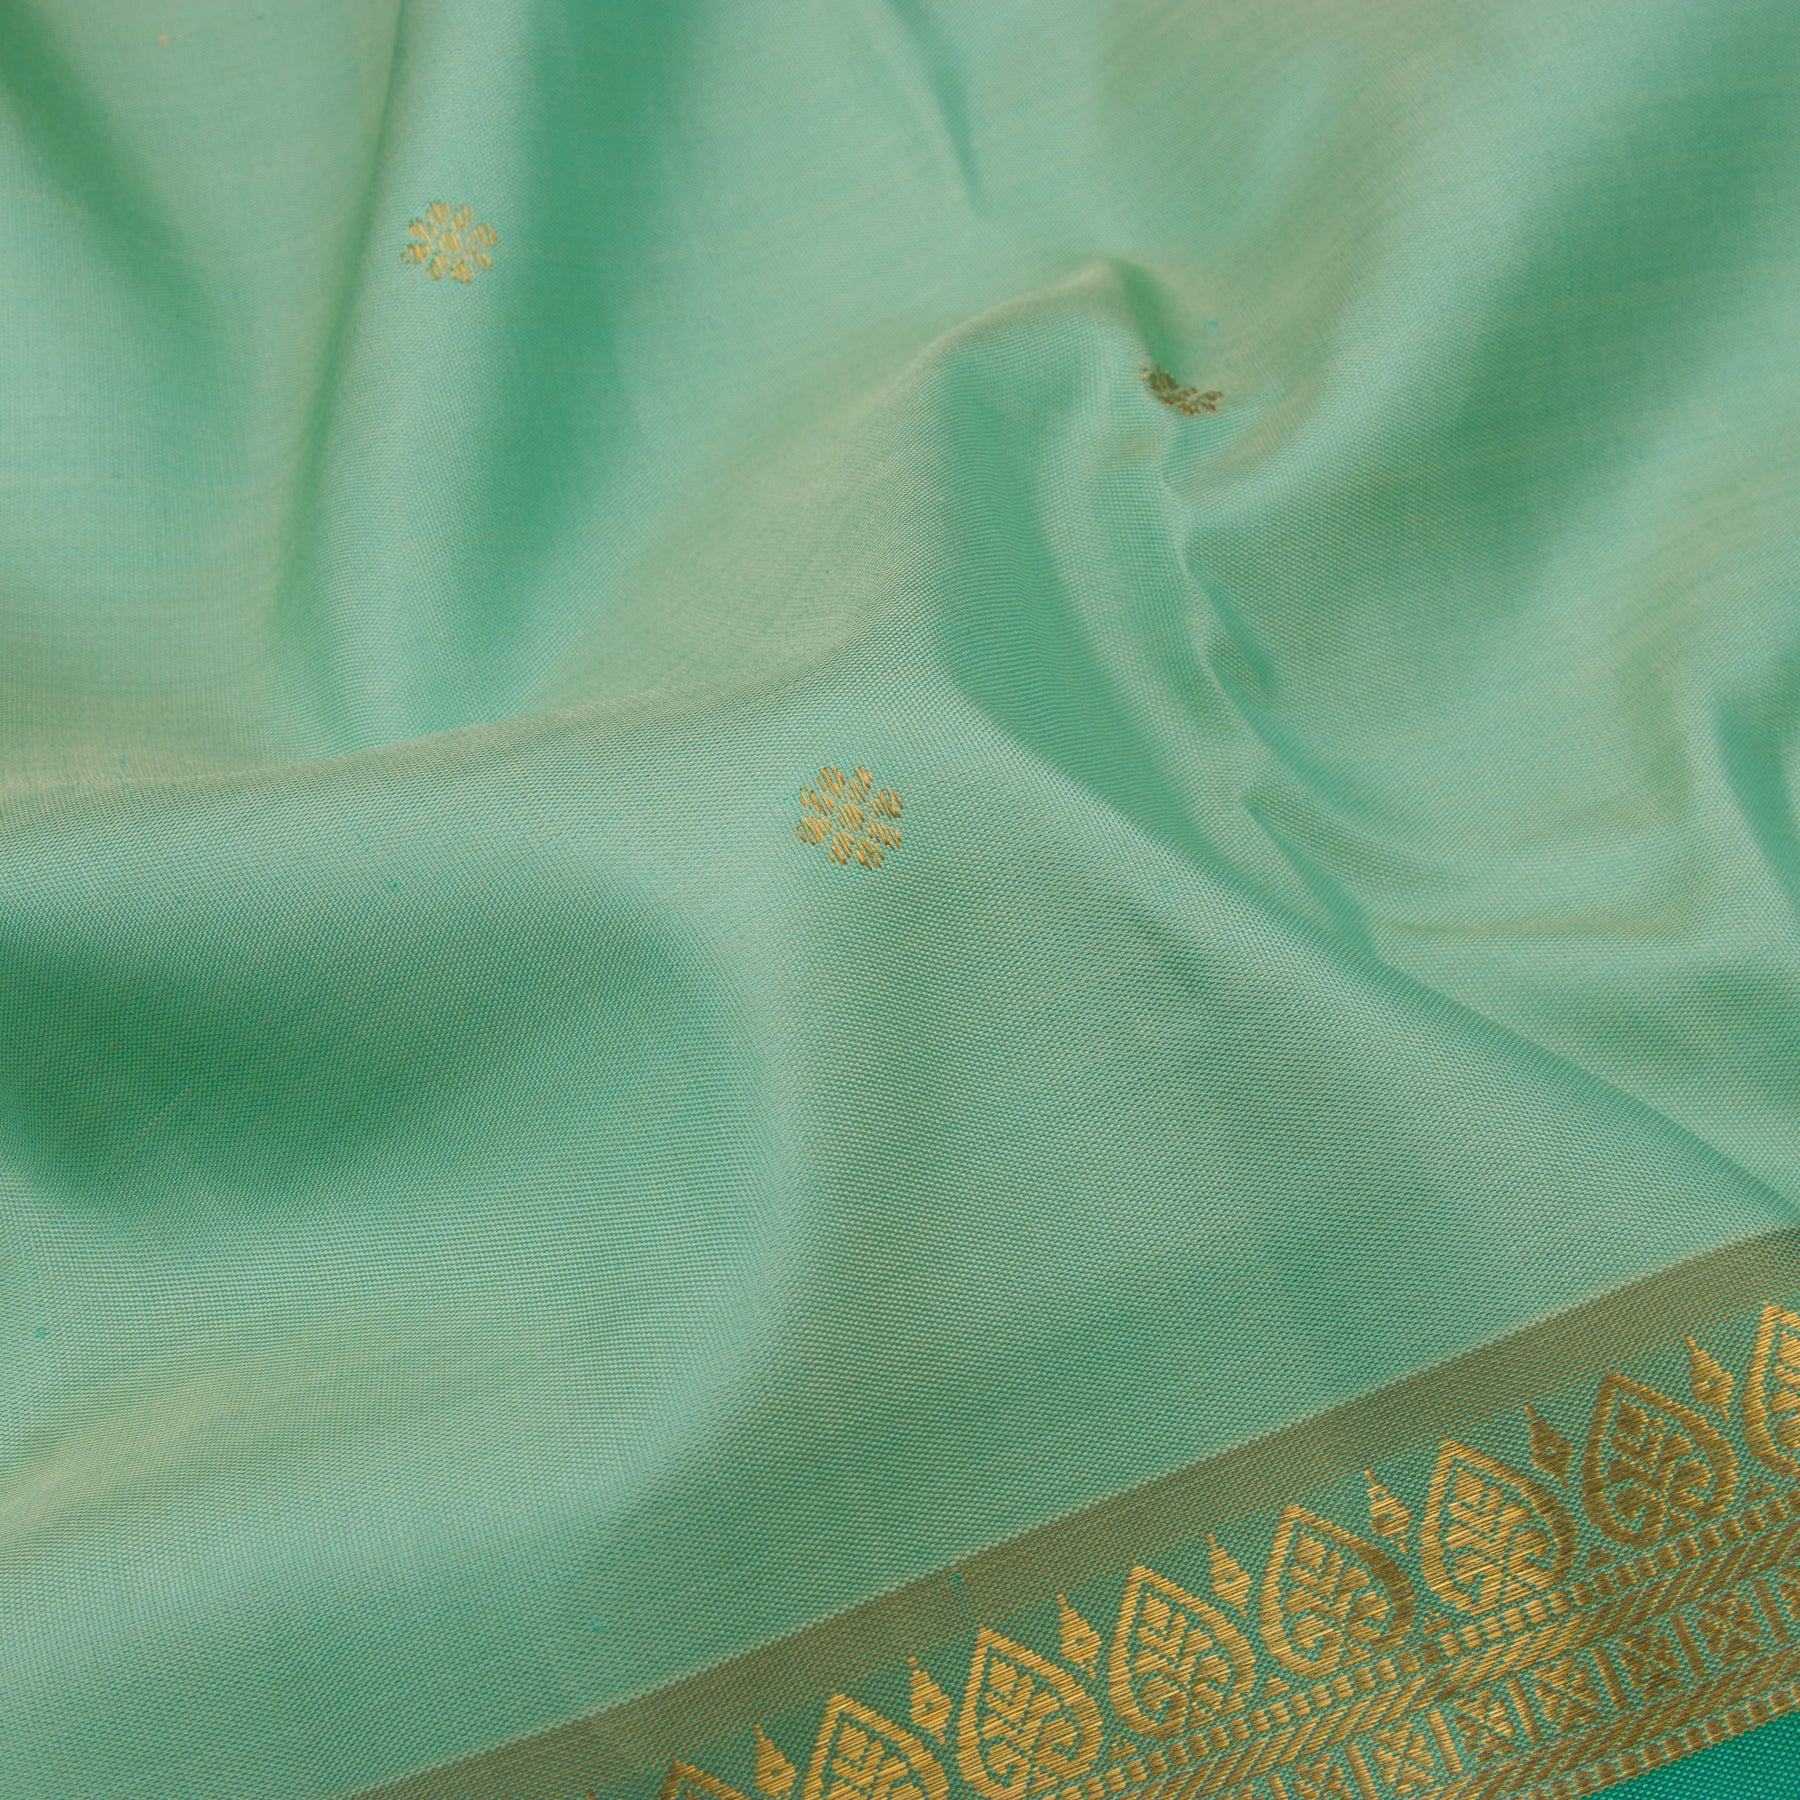 Kanakavalli Kanjivaram Silk Sari 22-600-HS001-14923 - Fabric View